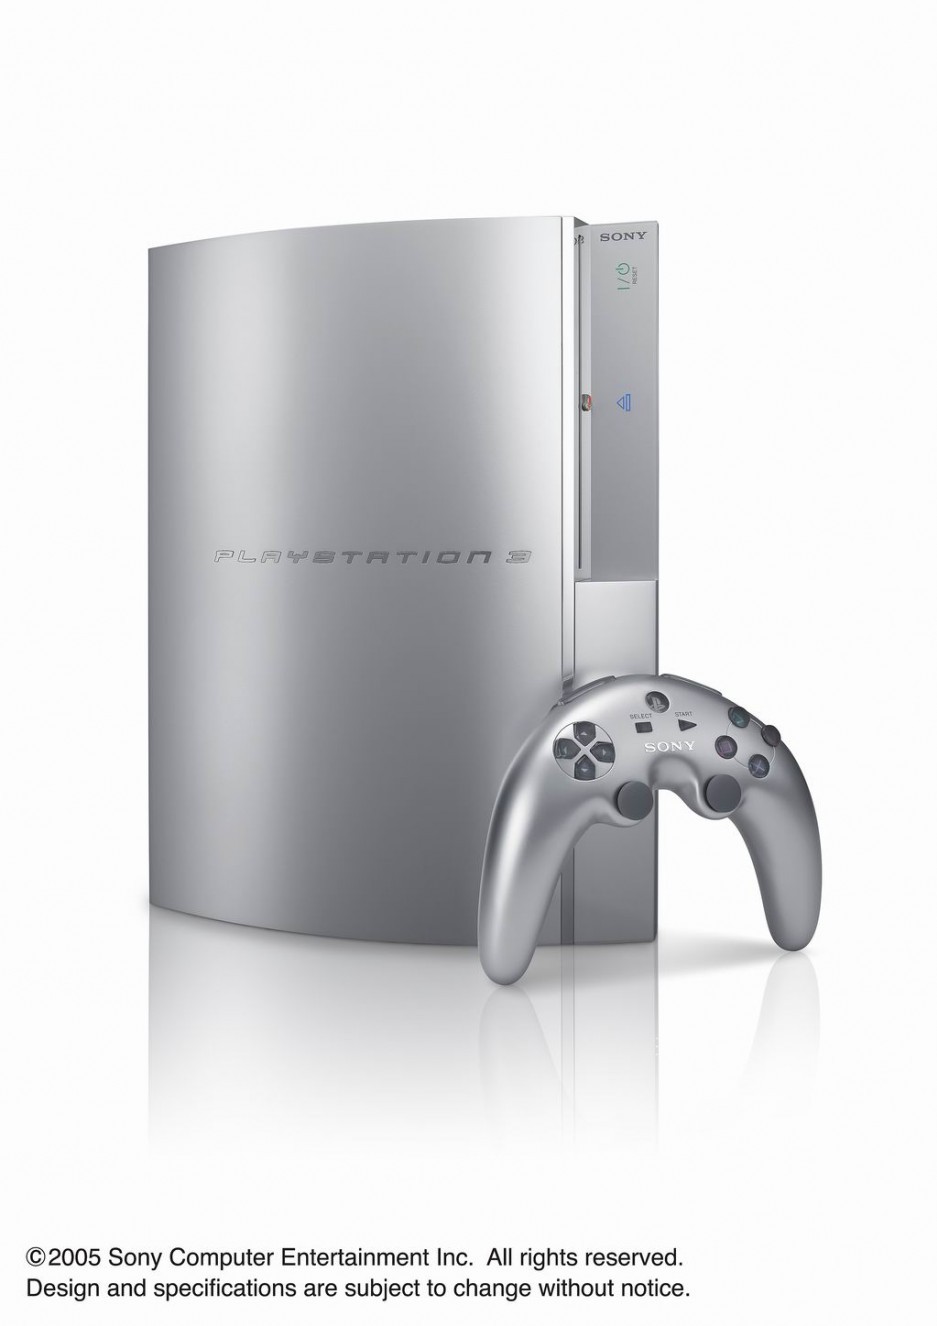 Pour Sony, rendre les futurs jeux PS5 compatibles avec la PS4 n'est pas une  priorité